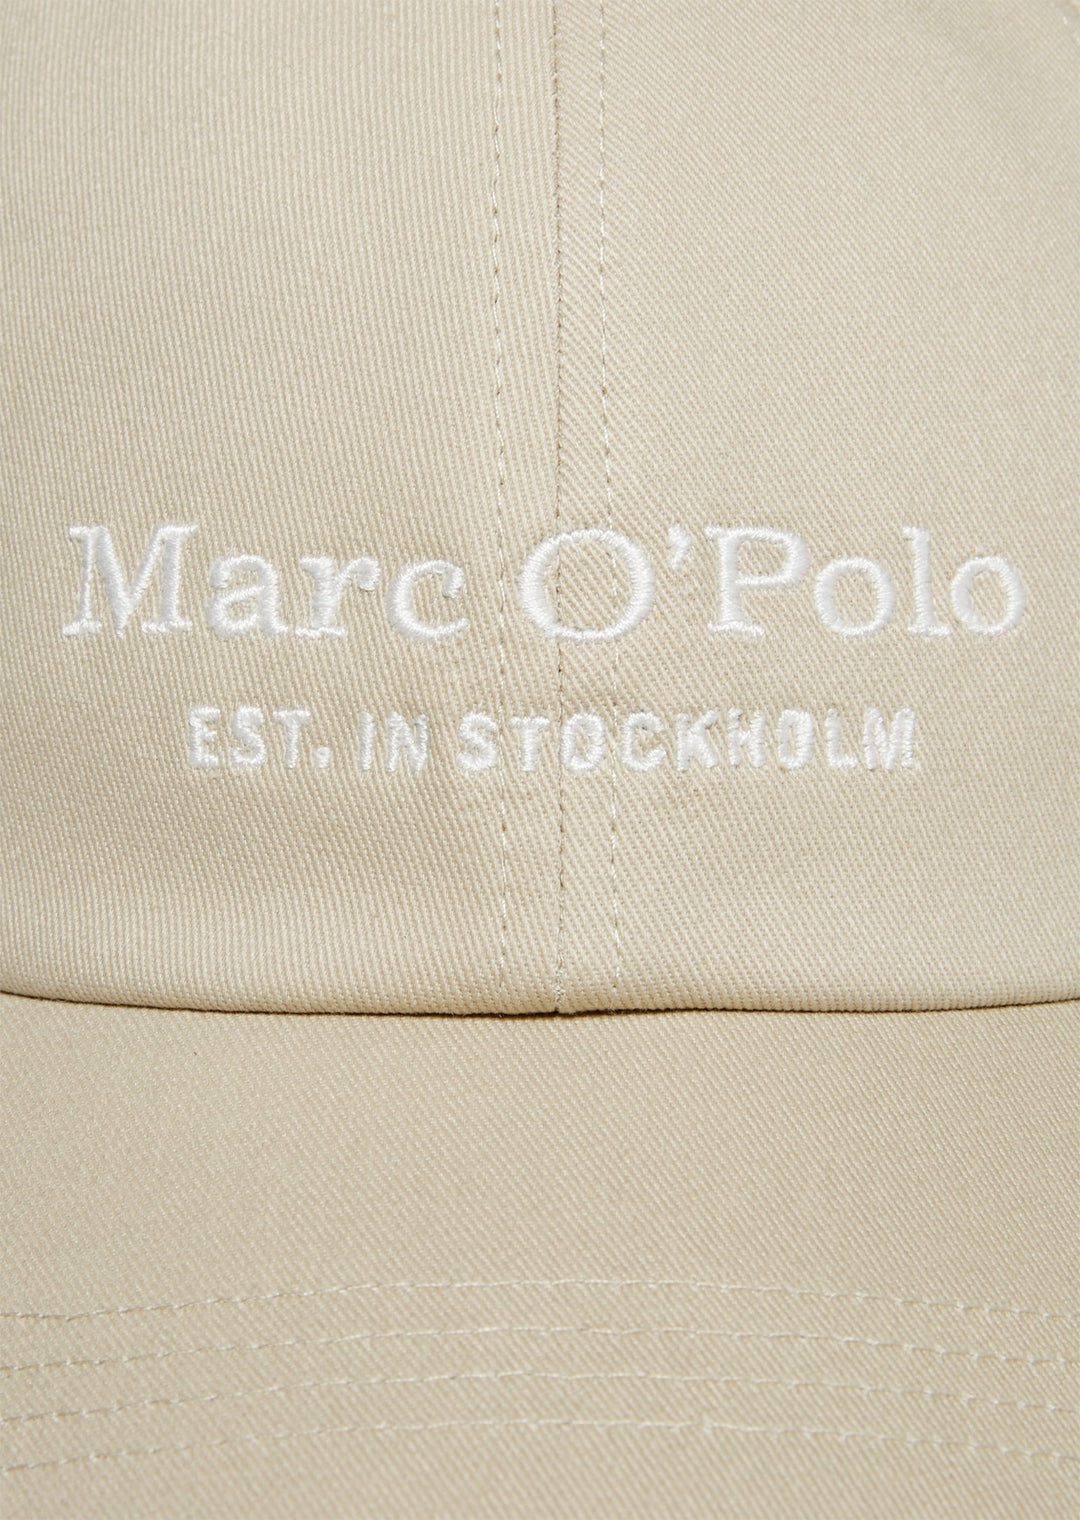 Marc O'Polo Cap/Kapa M22806801076